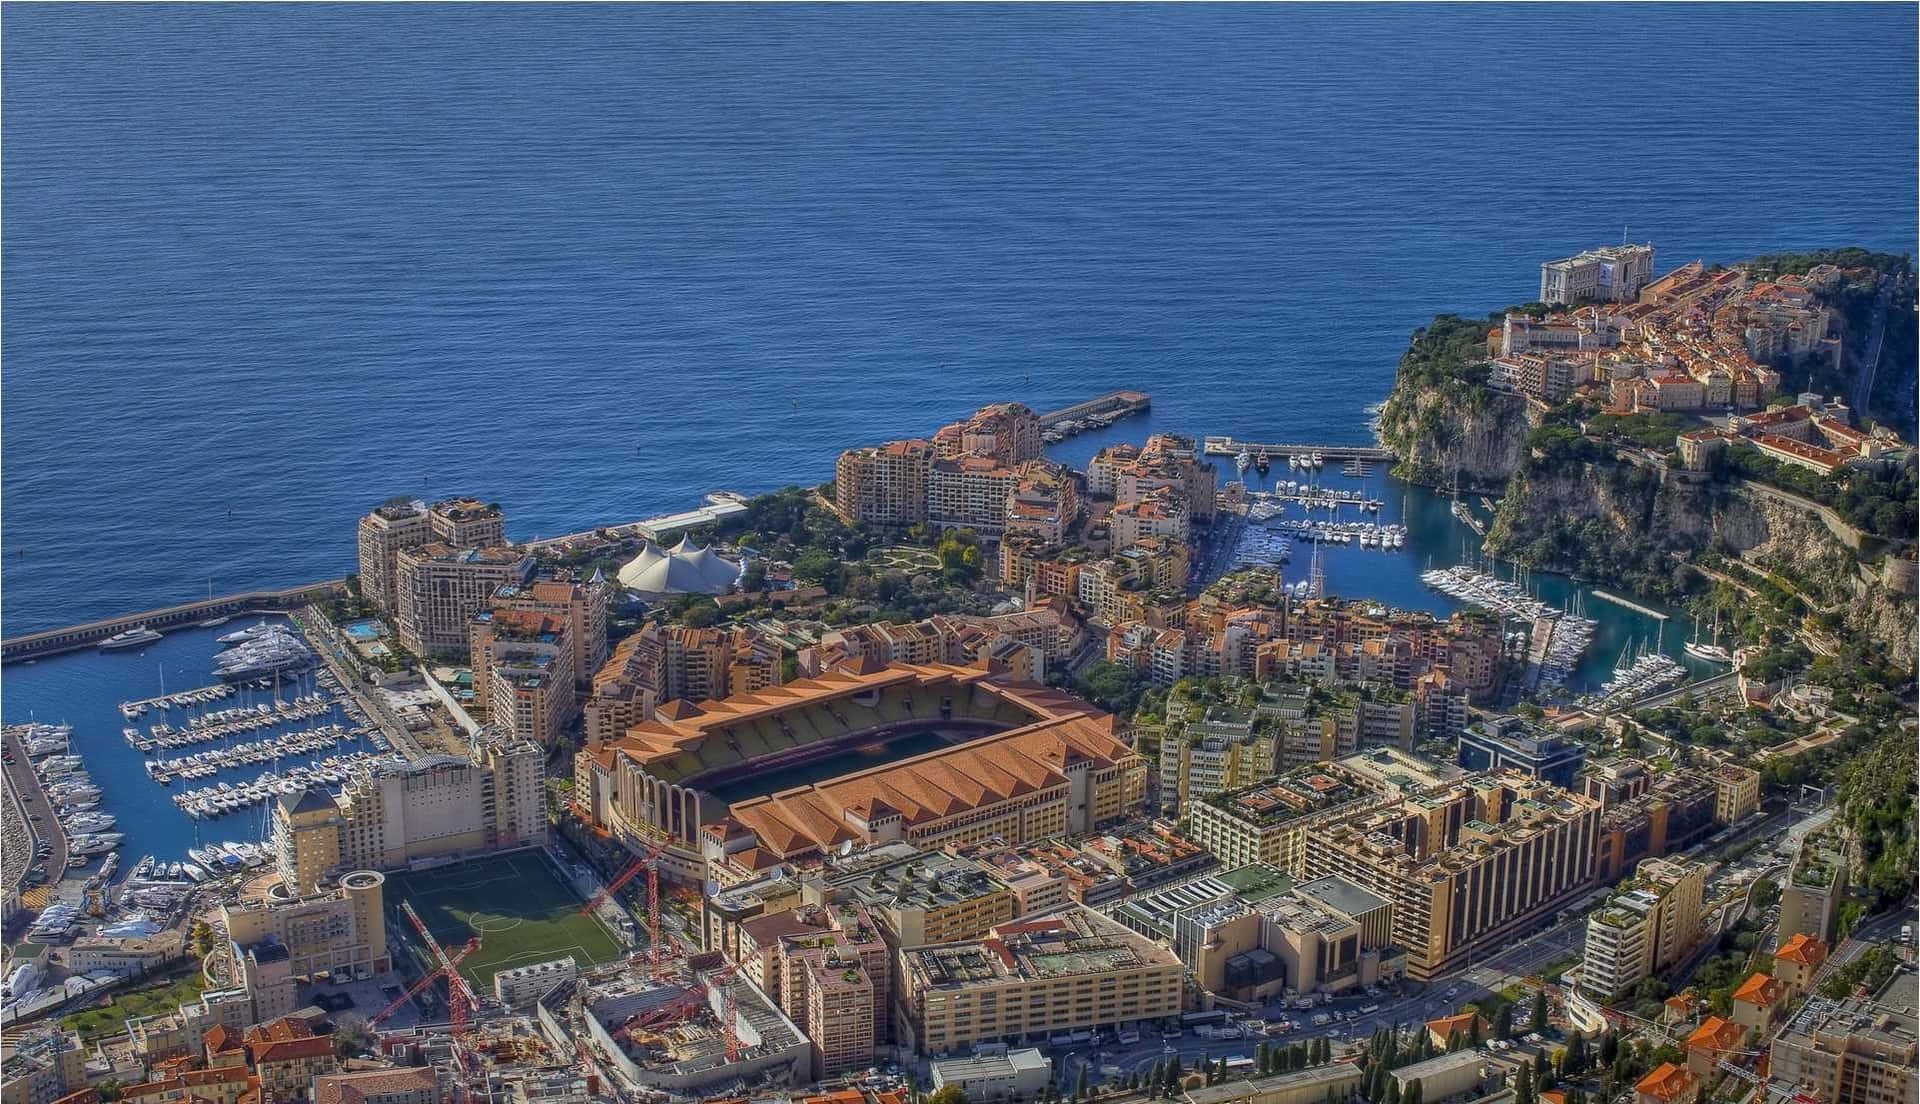 Historic Monaco Picture